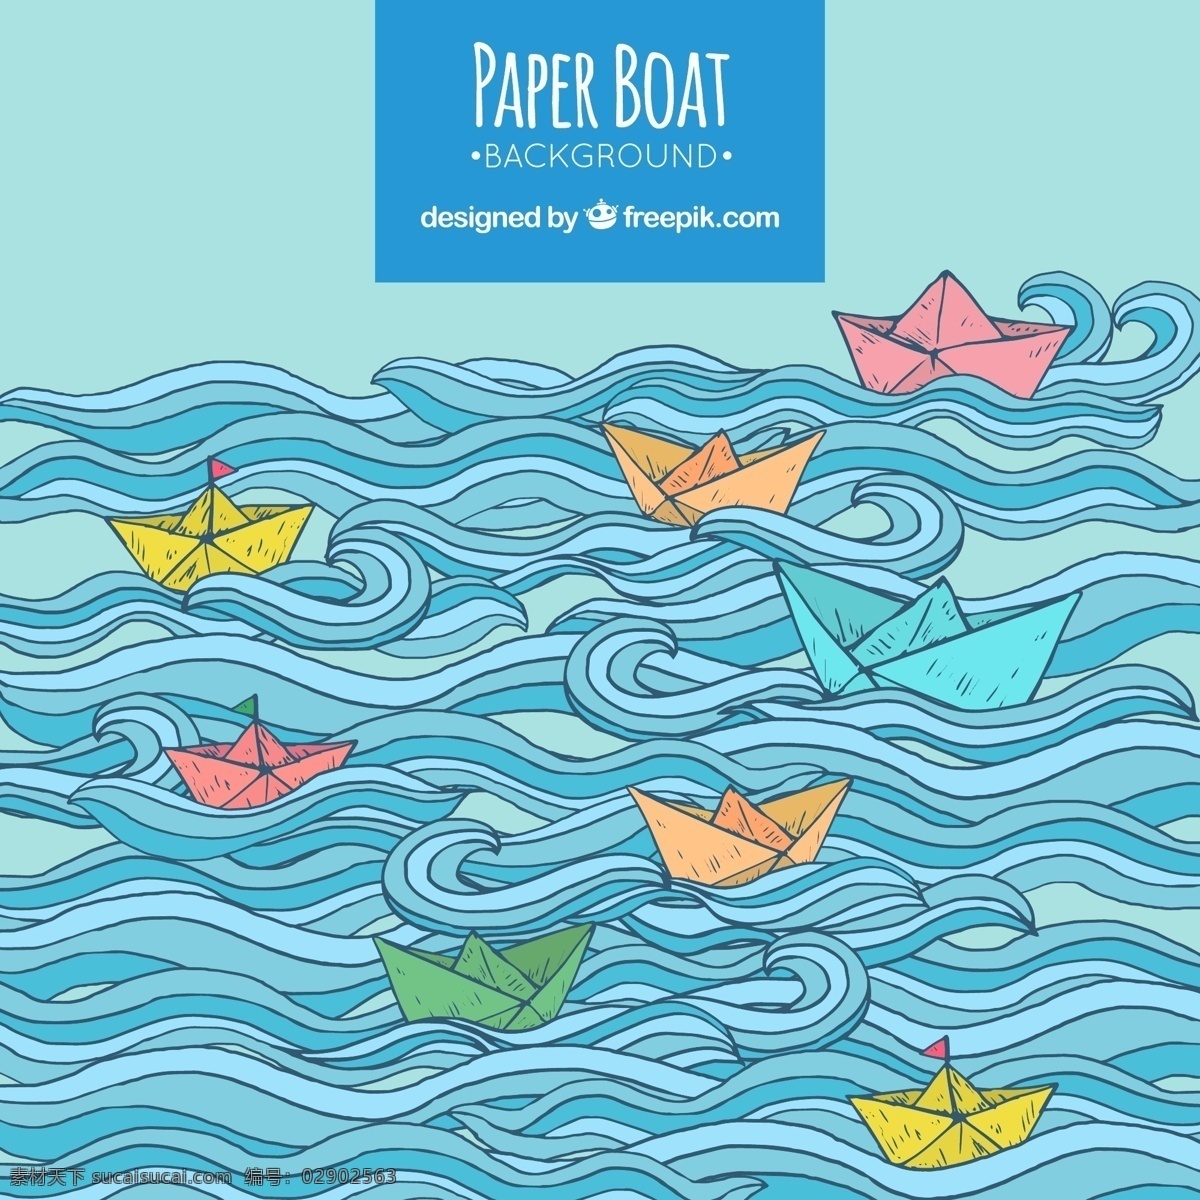 梦幻 般 蓝色 波浪 彩色 纸船 背景 梦幻般的 蓝色波浪 彩色纸船 背景素材